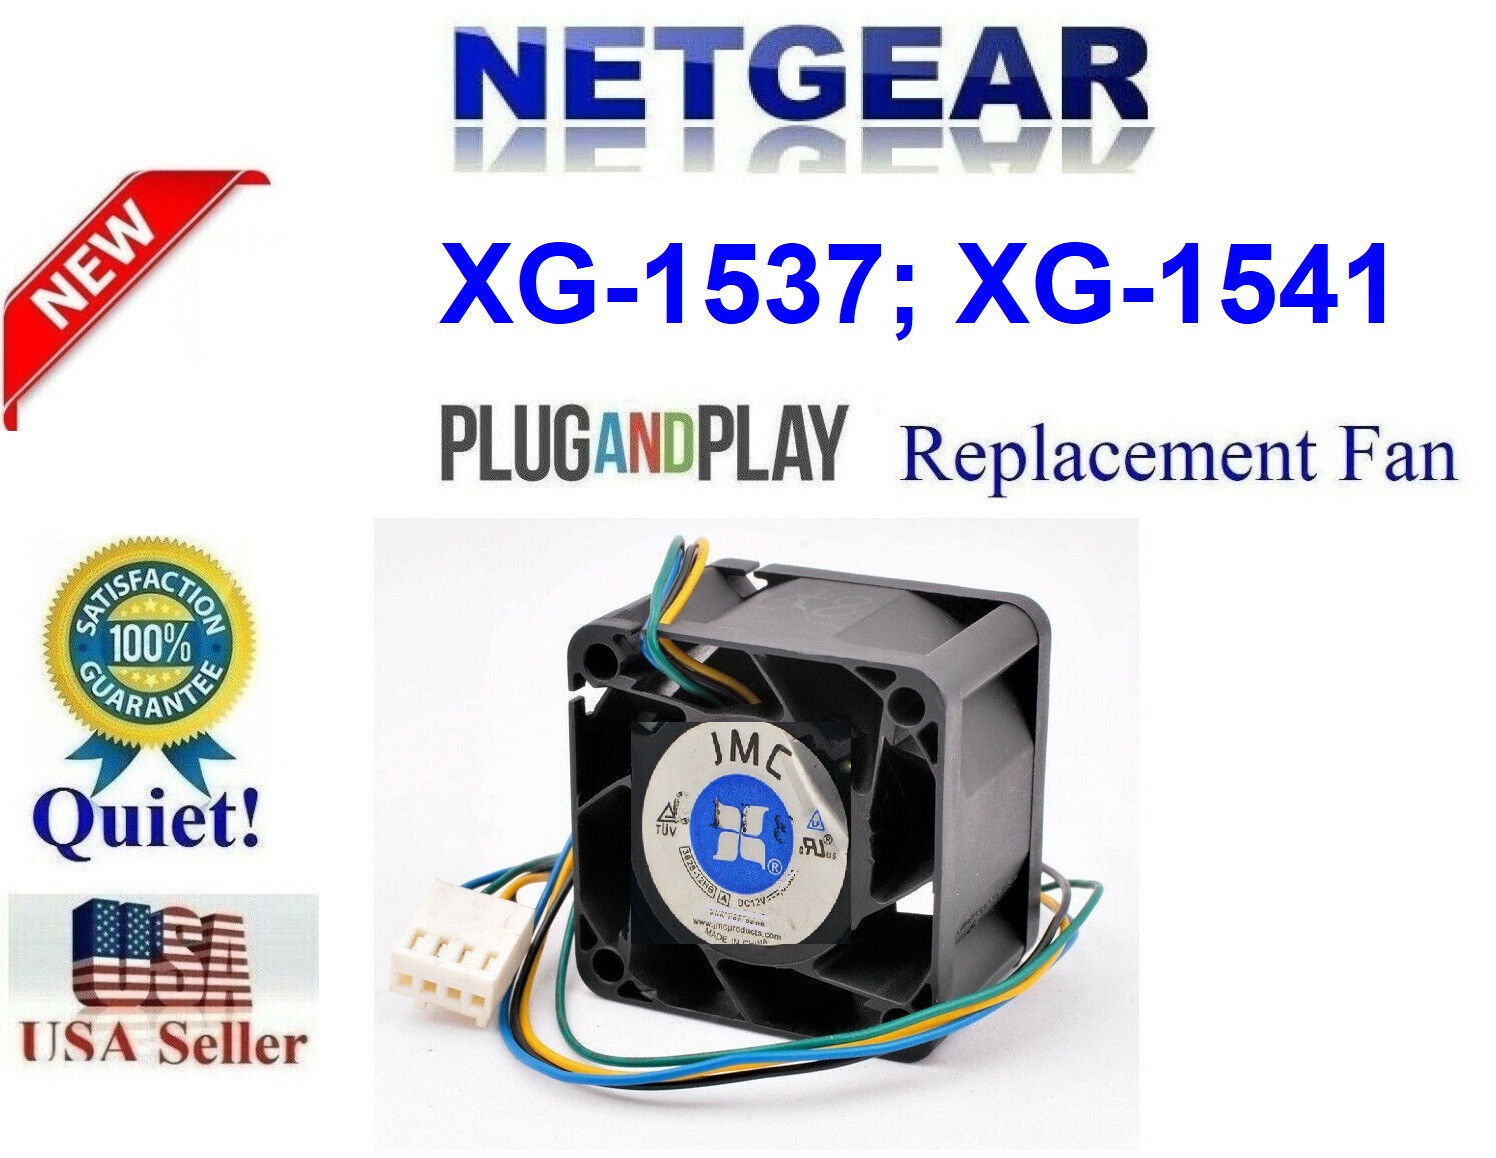 1x Quiet Version Replacement Fan for Netgate XG-1537; XG-1541 SECURITY GATEWAY